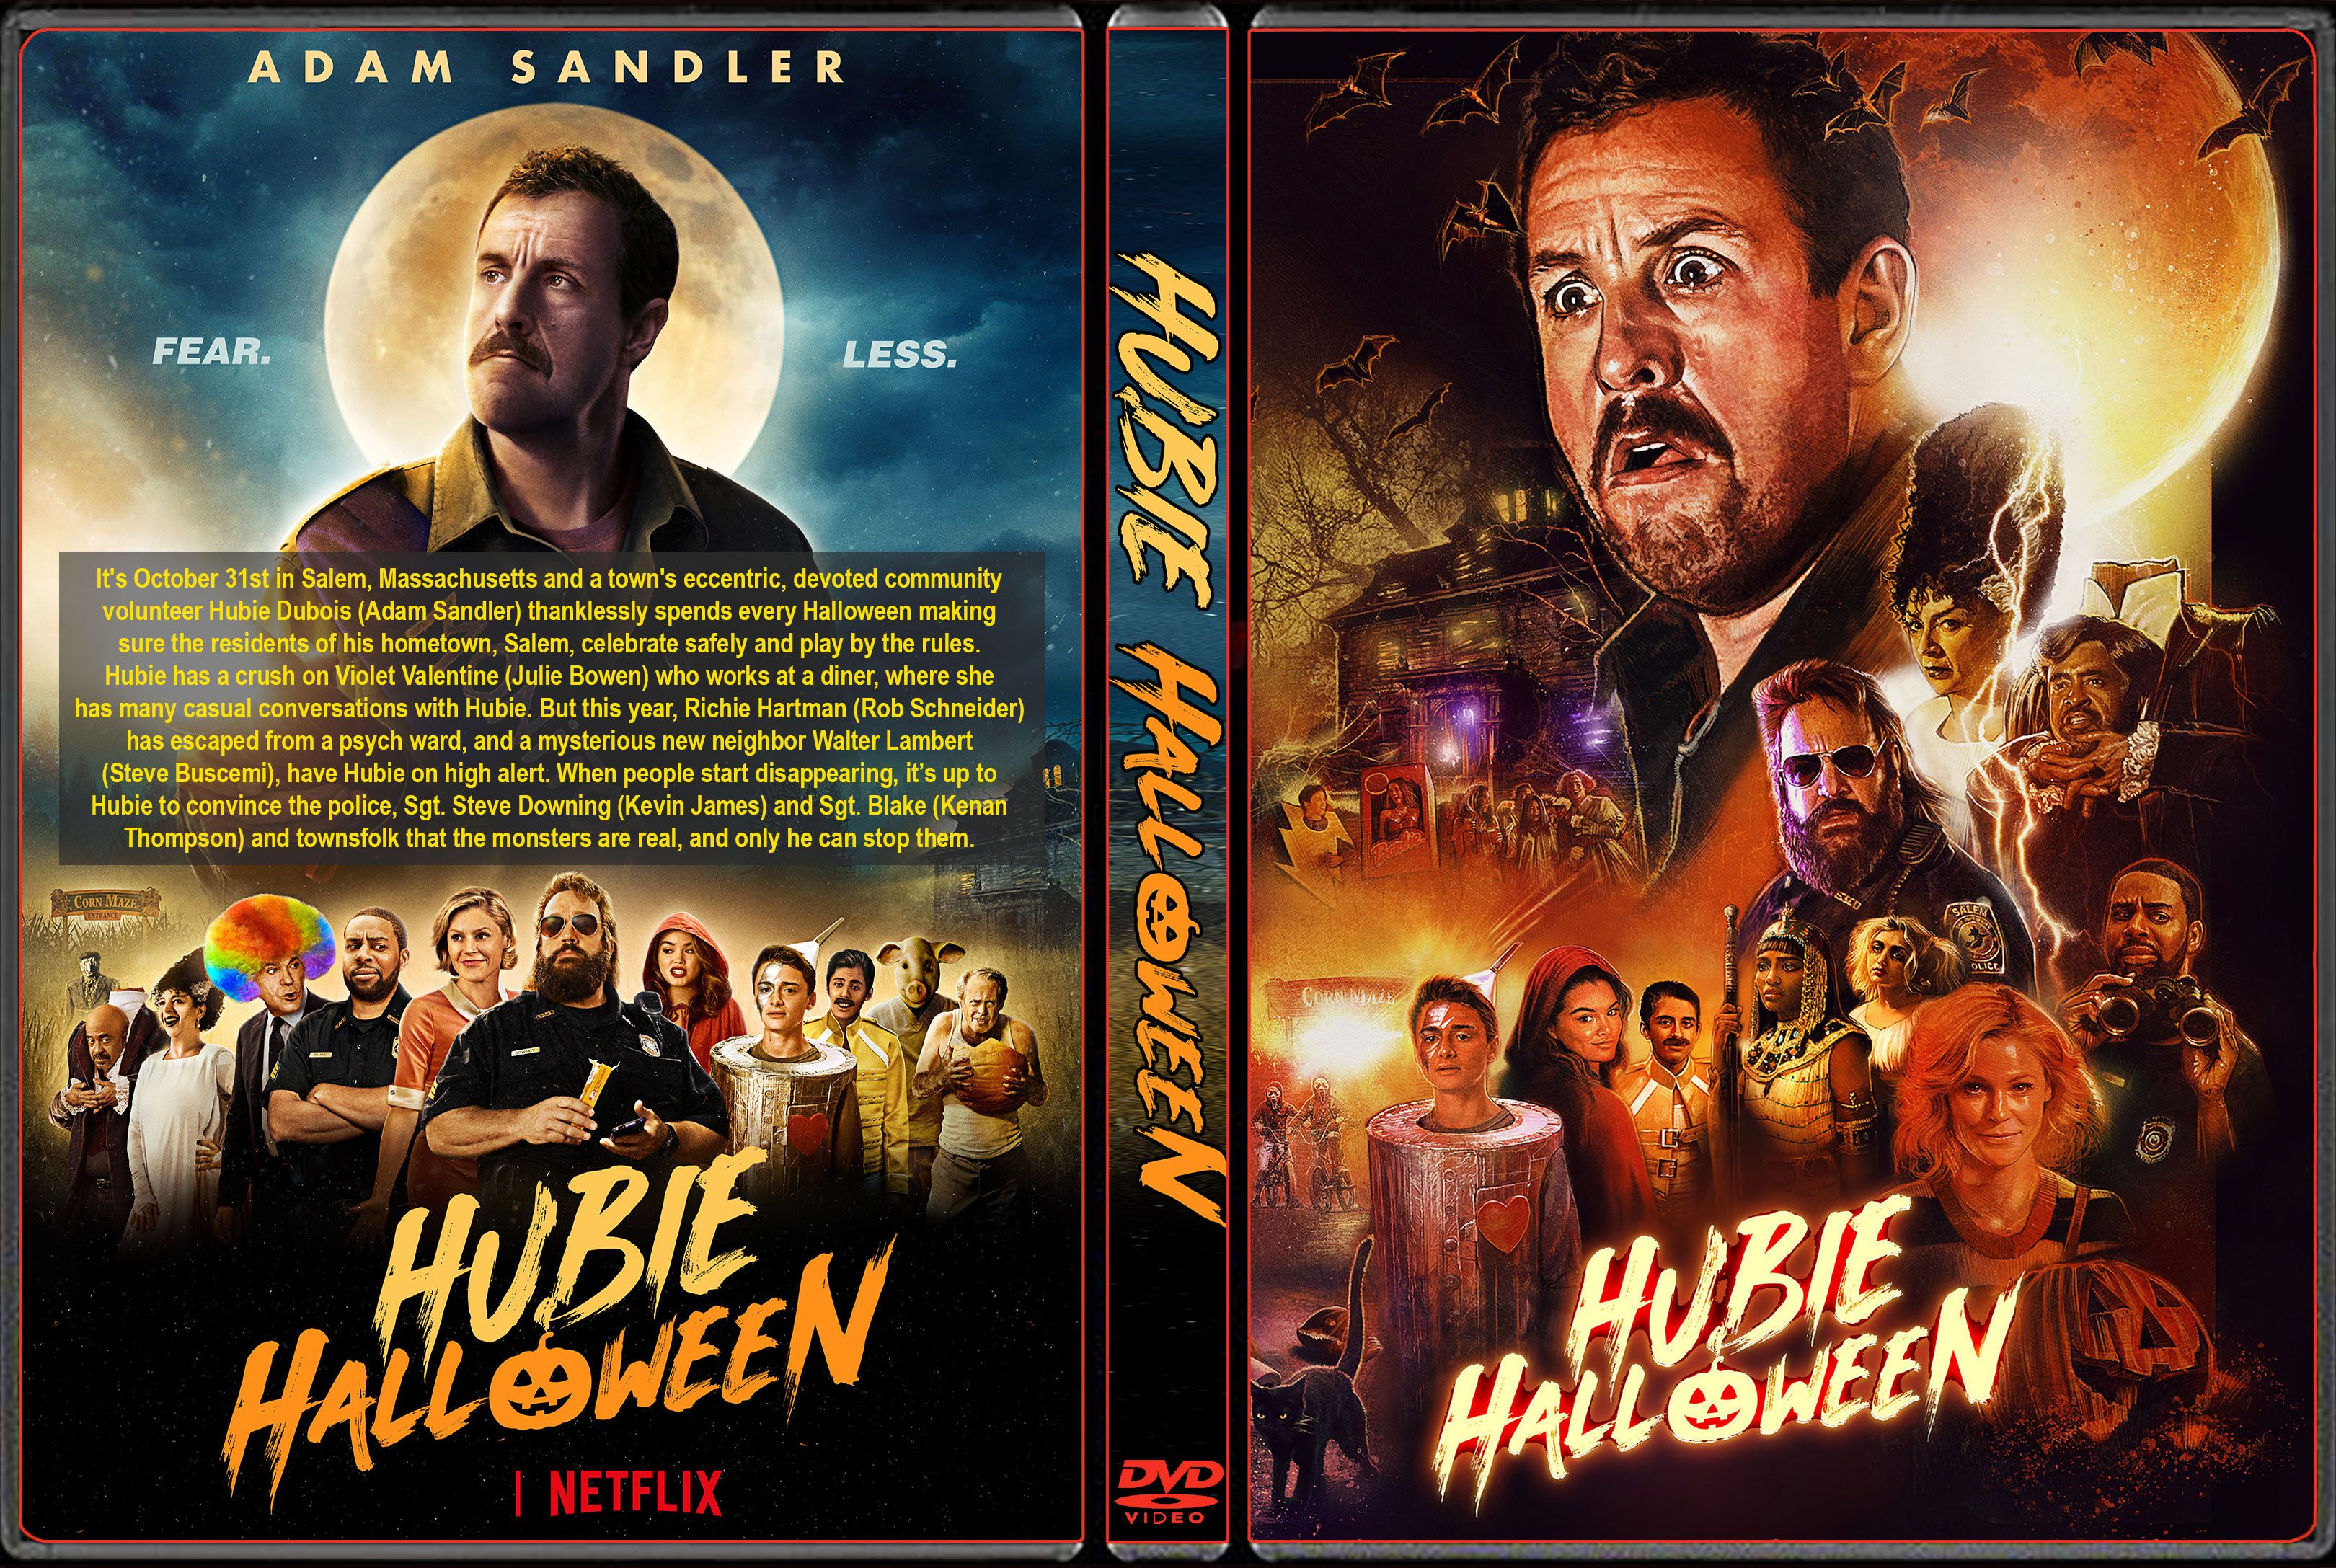 REPOST 30 Hubie Halloween (2020) Adam Sandler Collectie